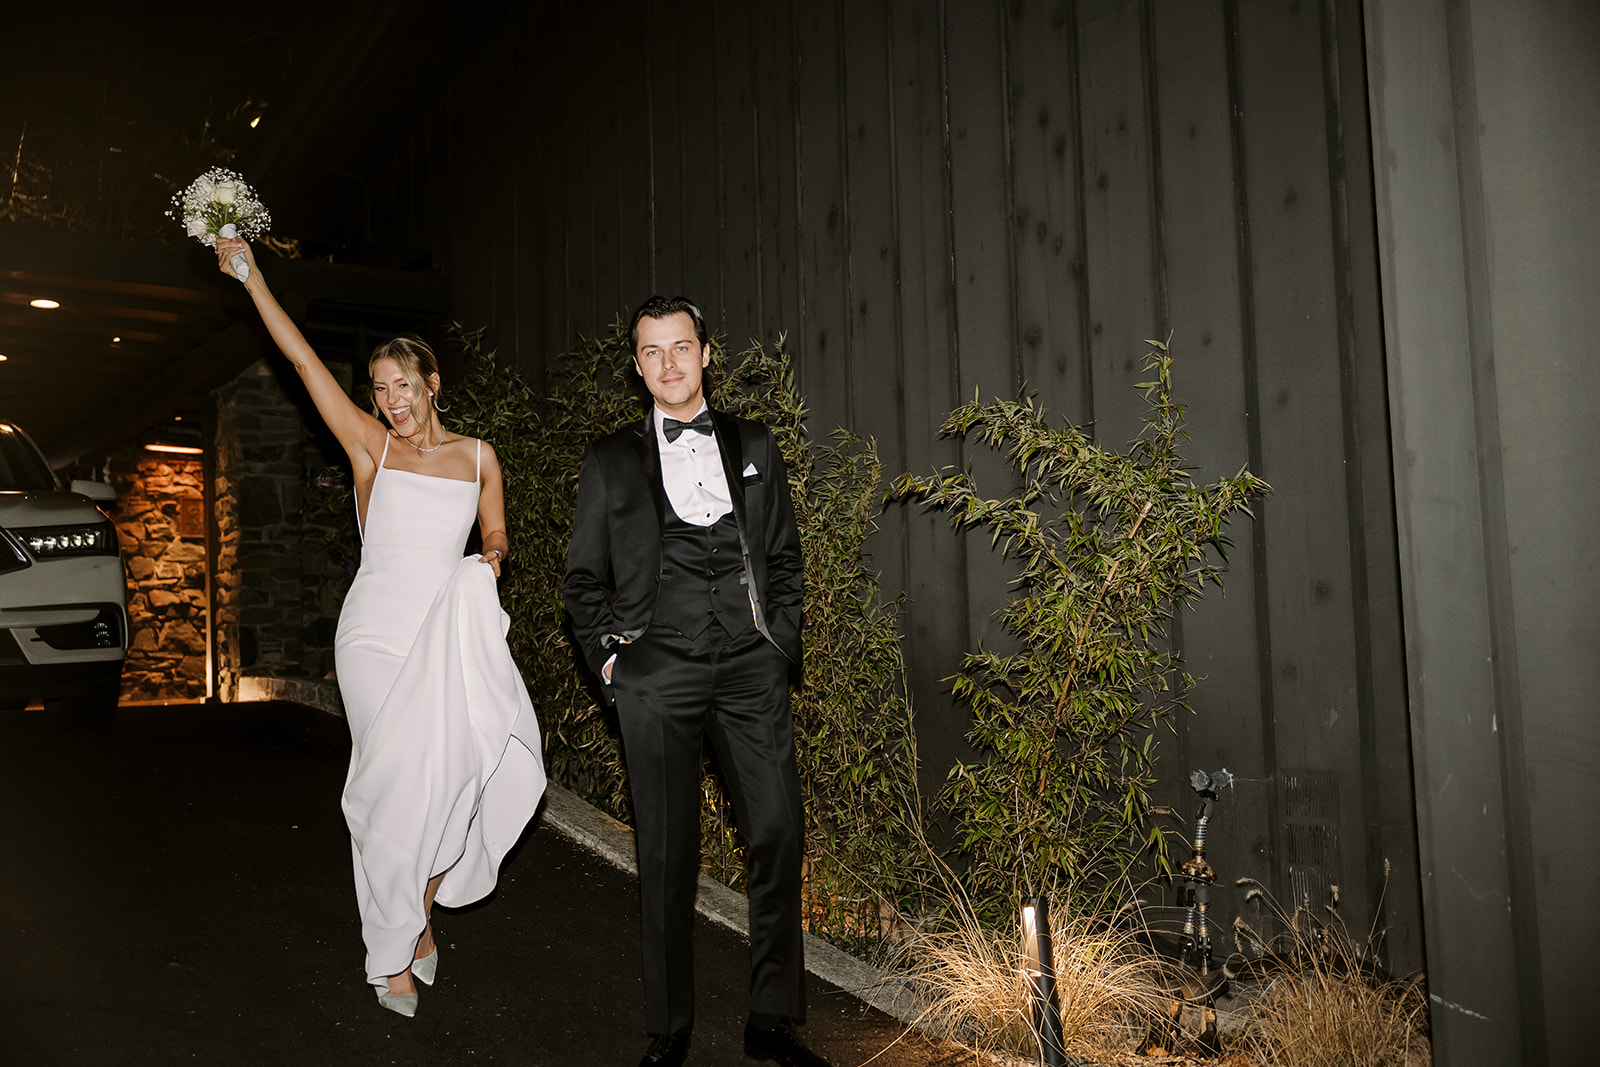 bride and groom walk together smiling at James Bond vibe wedding